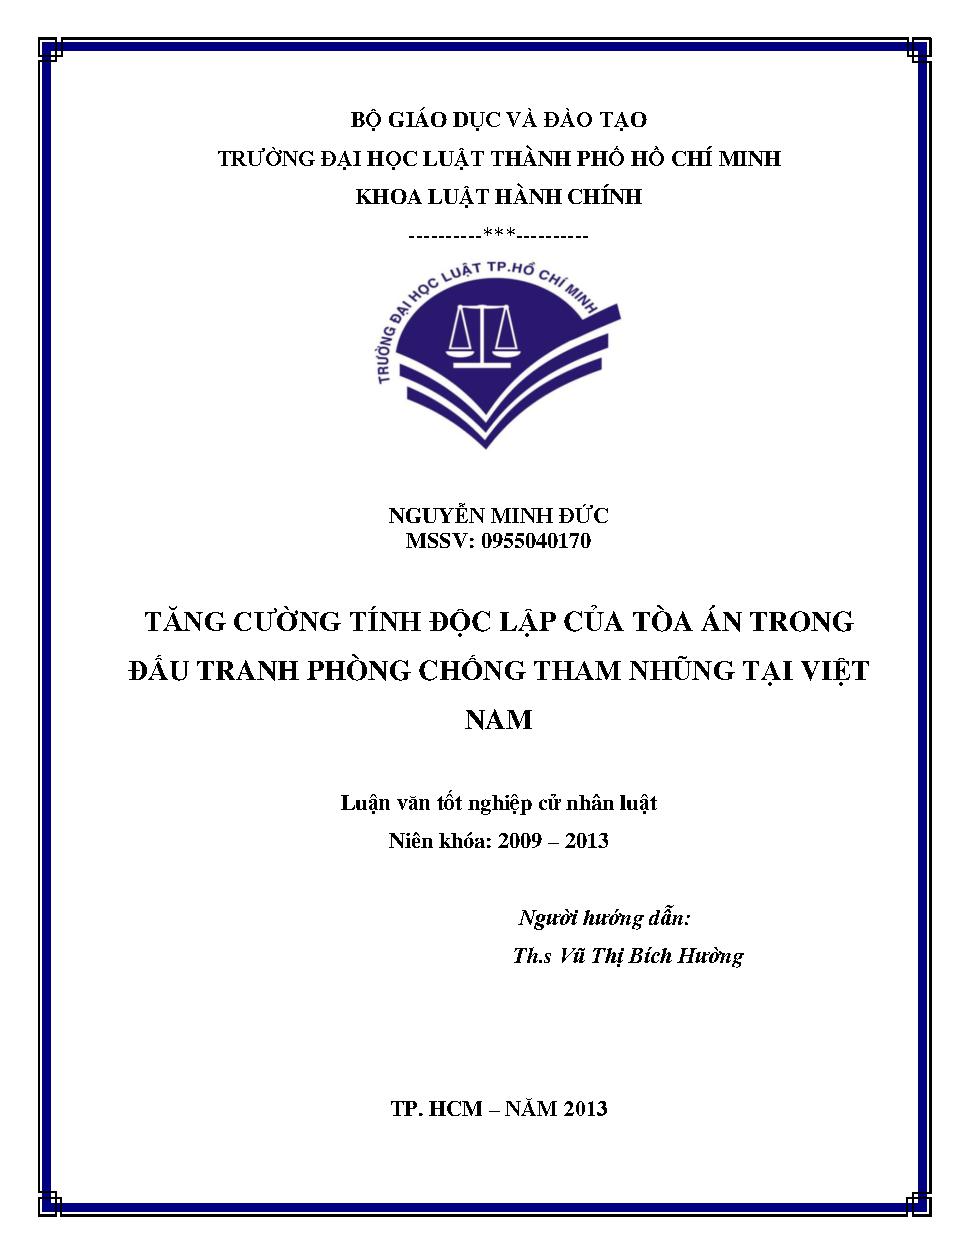 Tăng cường tính độc lập của Tòa án trong đấu tranh phòng chống tham nhũng tại Việt Nam